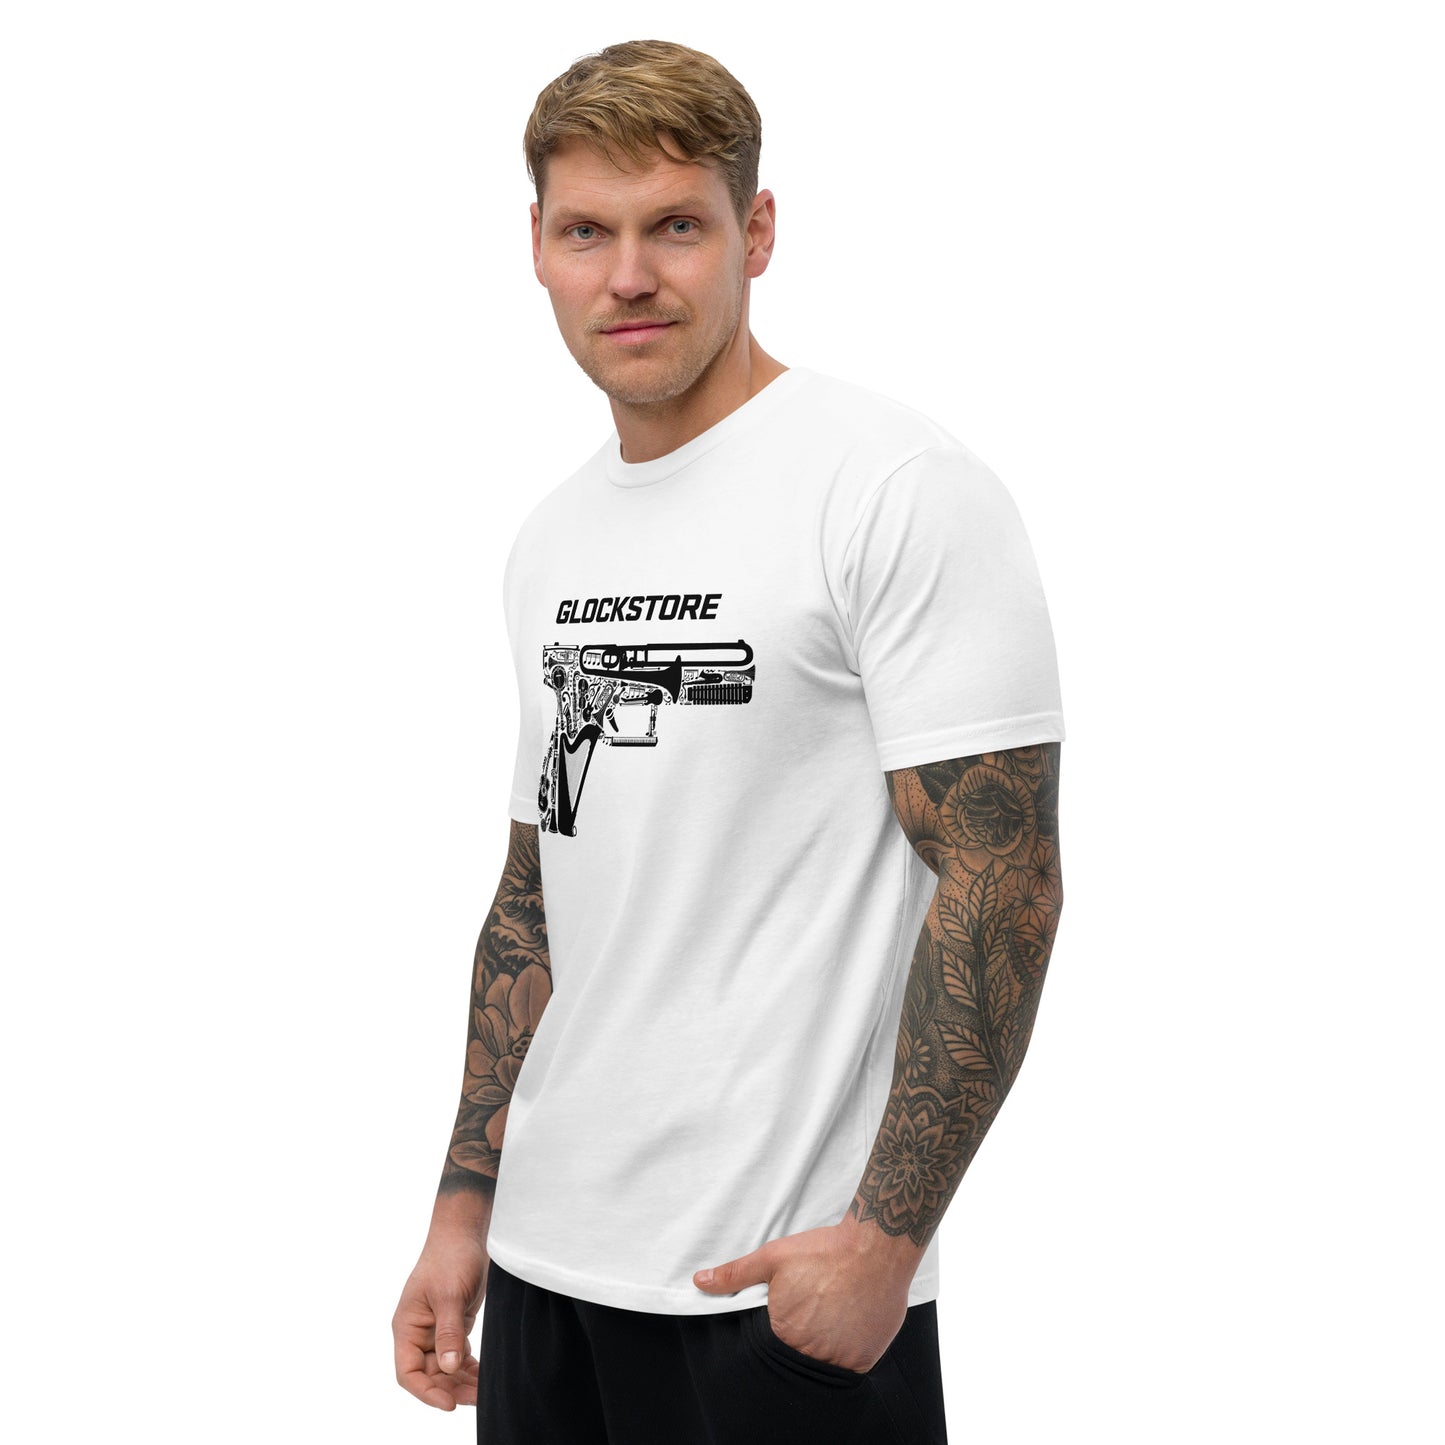 Music City GlockStore T-shirt